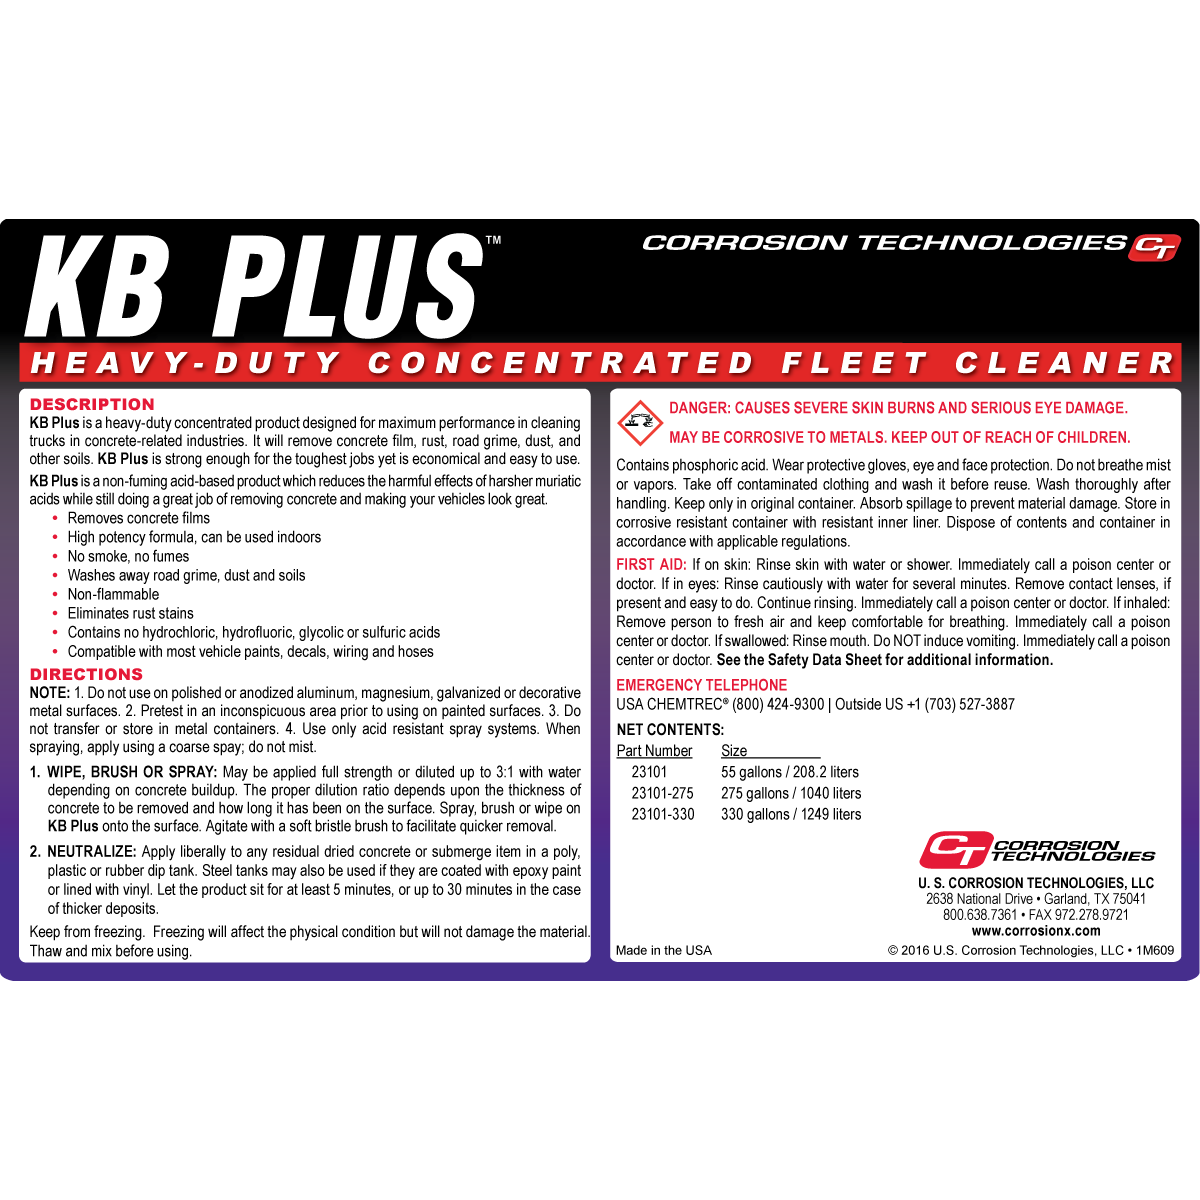 Limpiador concentrado para flotas de servicio pesado KB Plus